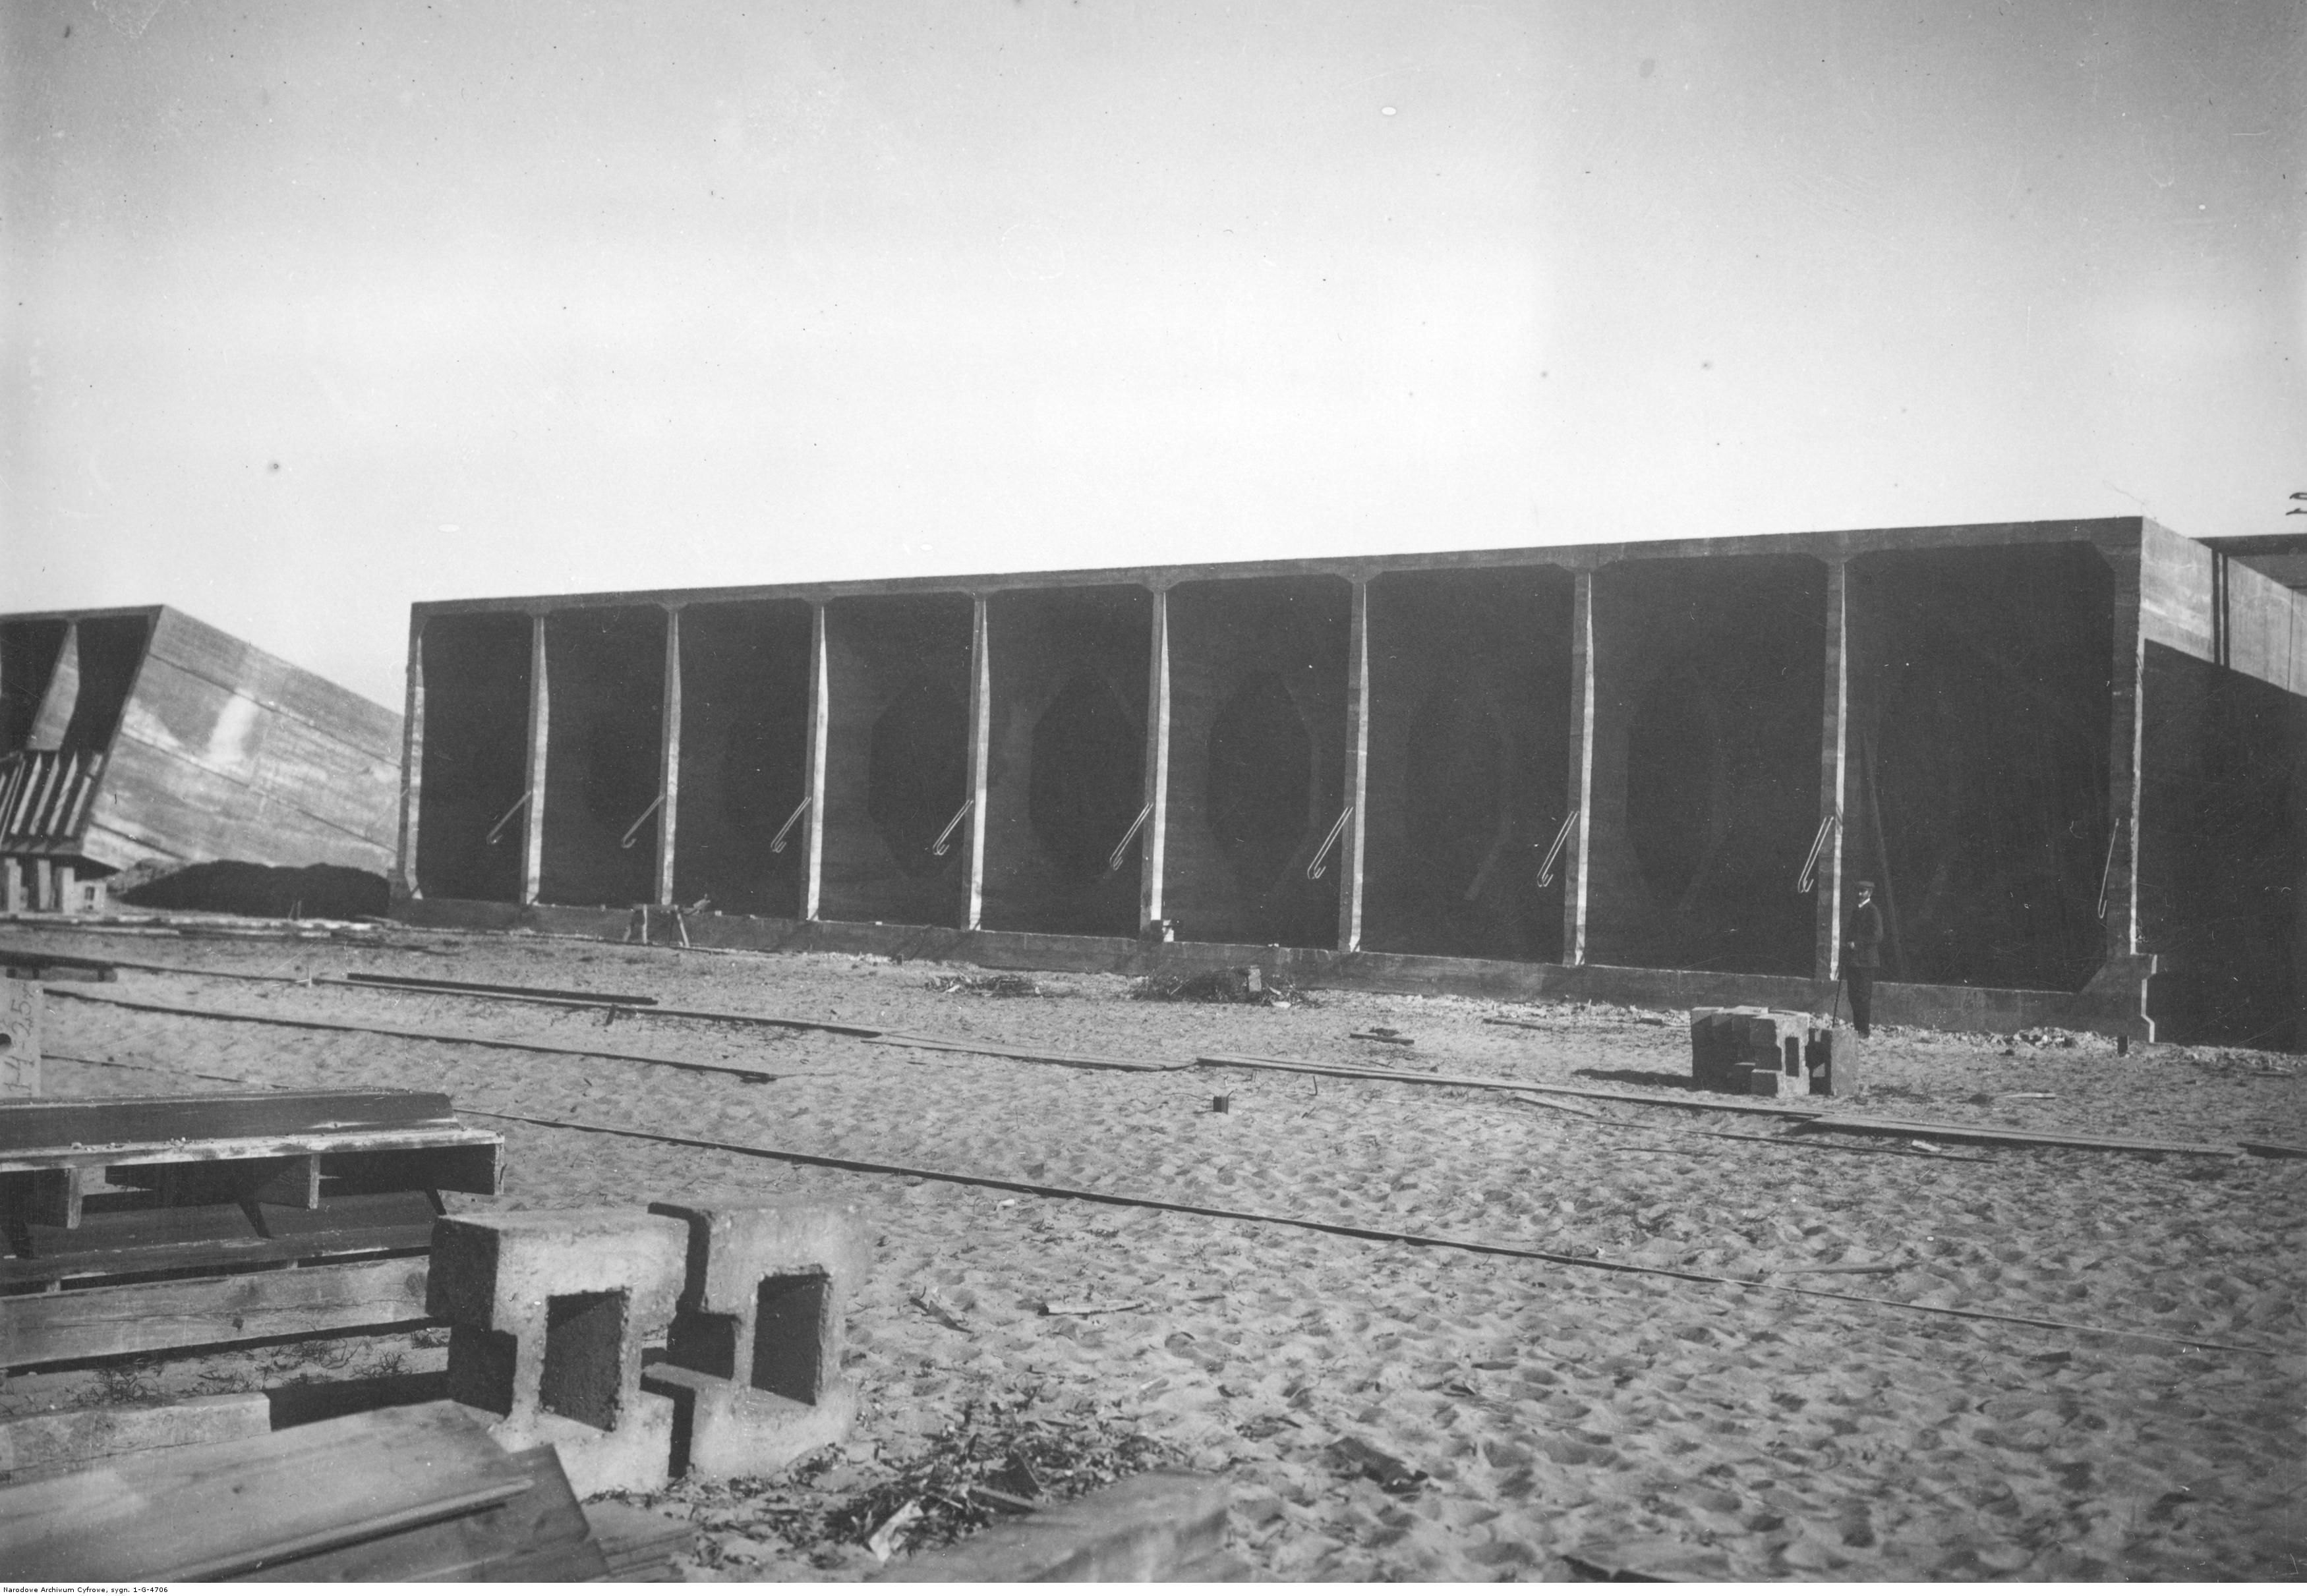 Ustawianie kesonów podczas budowy portu